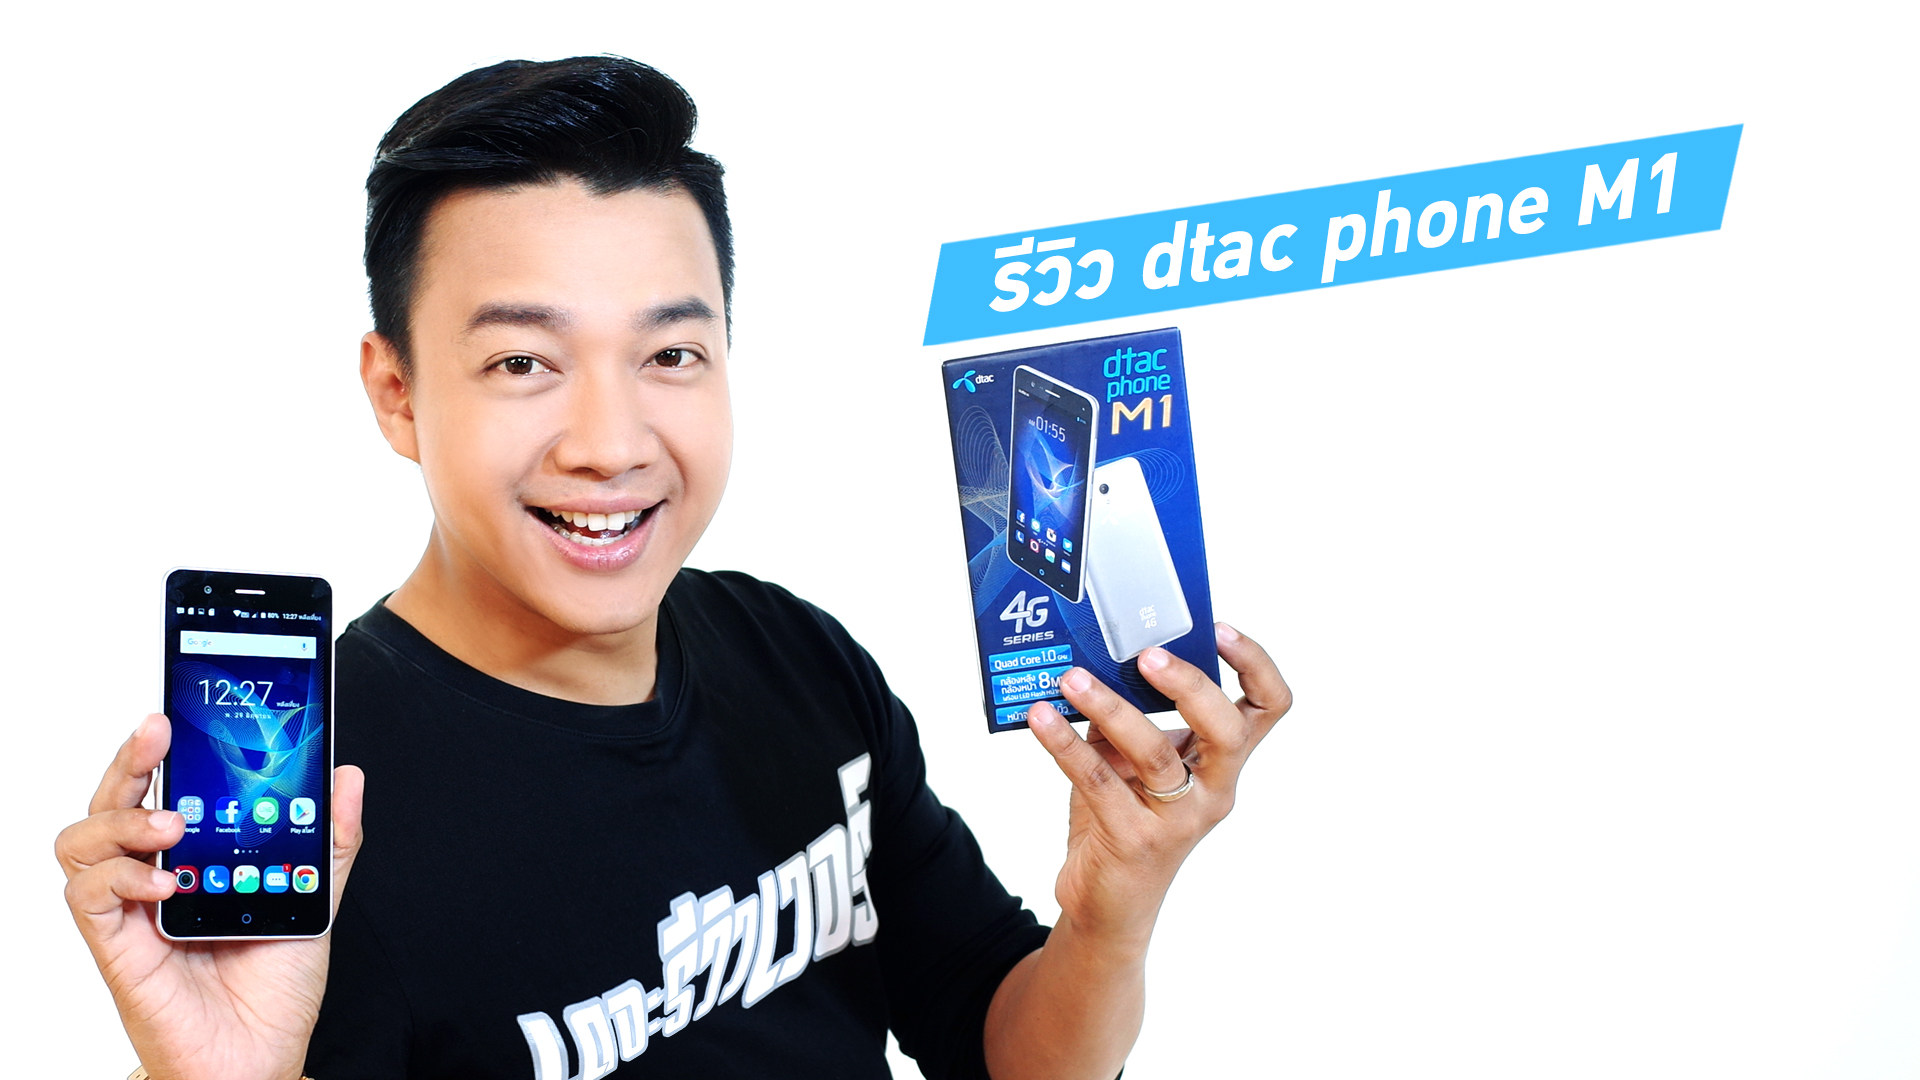 รีวิว dtac phone M1 สมาร์ทโฟน 4G รองรับ VoLTE พร้อมจอ IPS ราคาเบาๆ